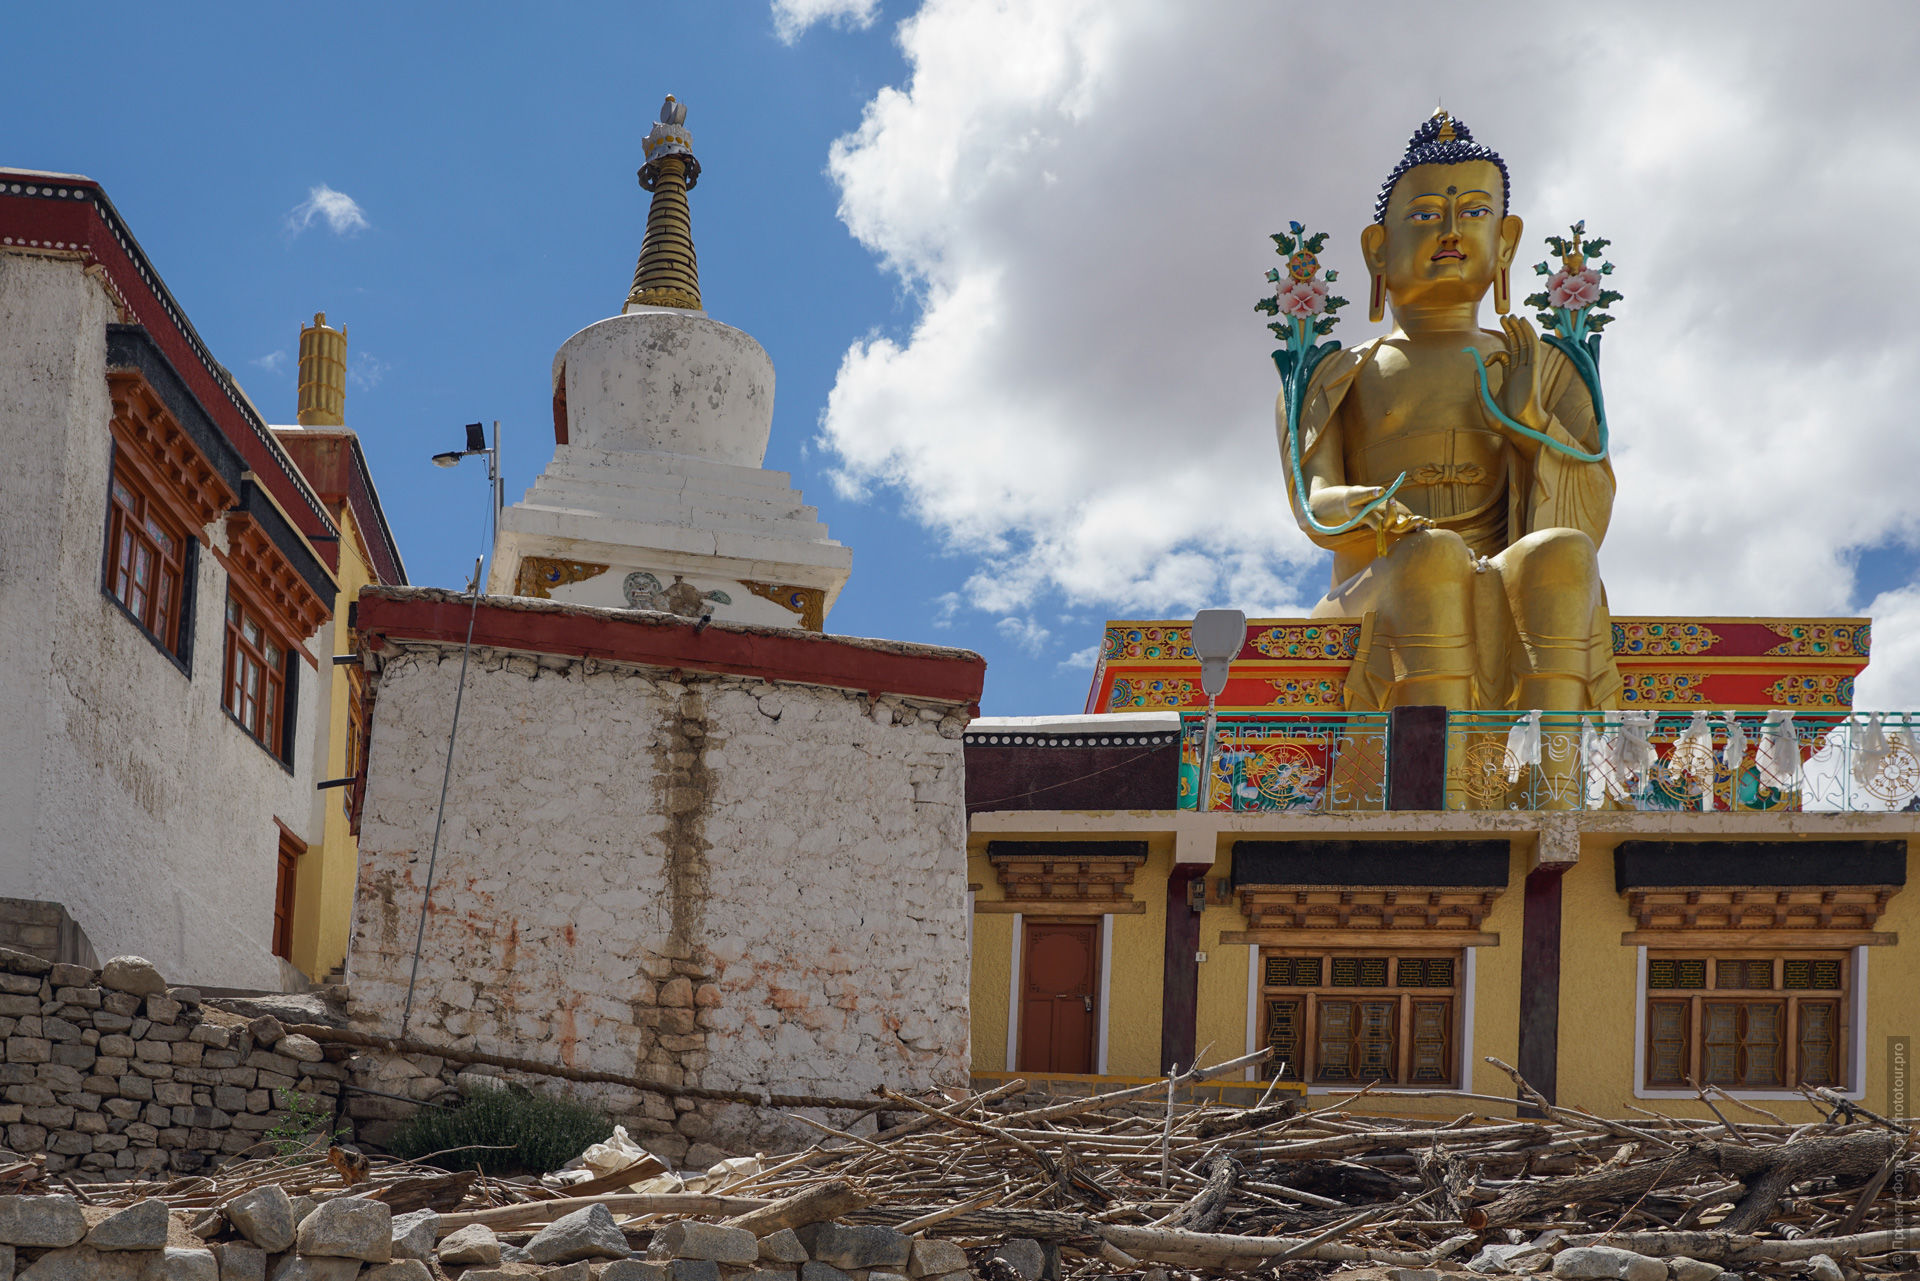 Статуя Будды Шакьямуни в буддийском монастыре Ликир, Ладакх, Гималаи, Индия.